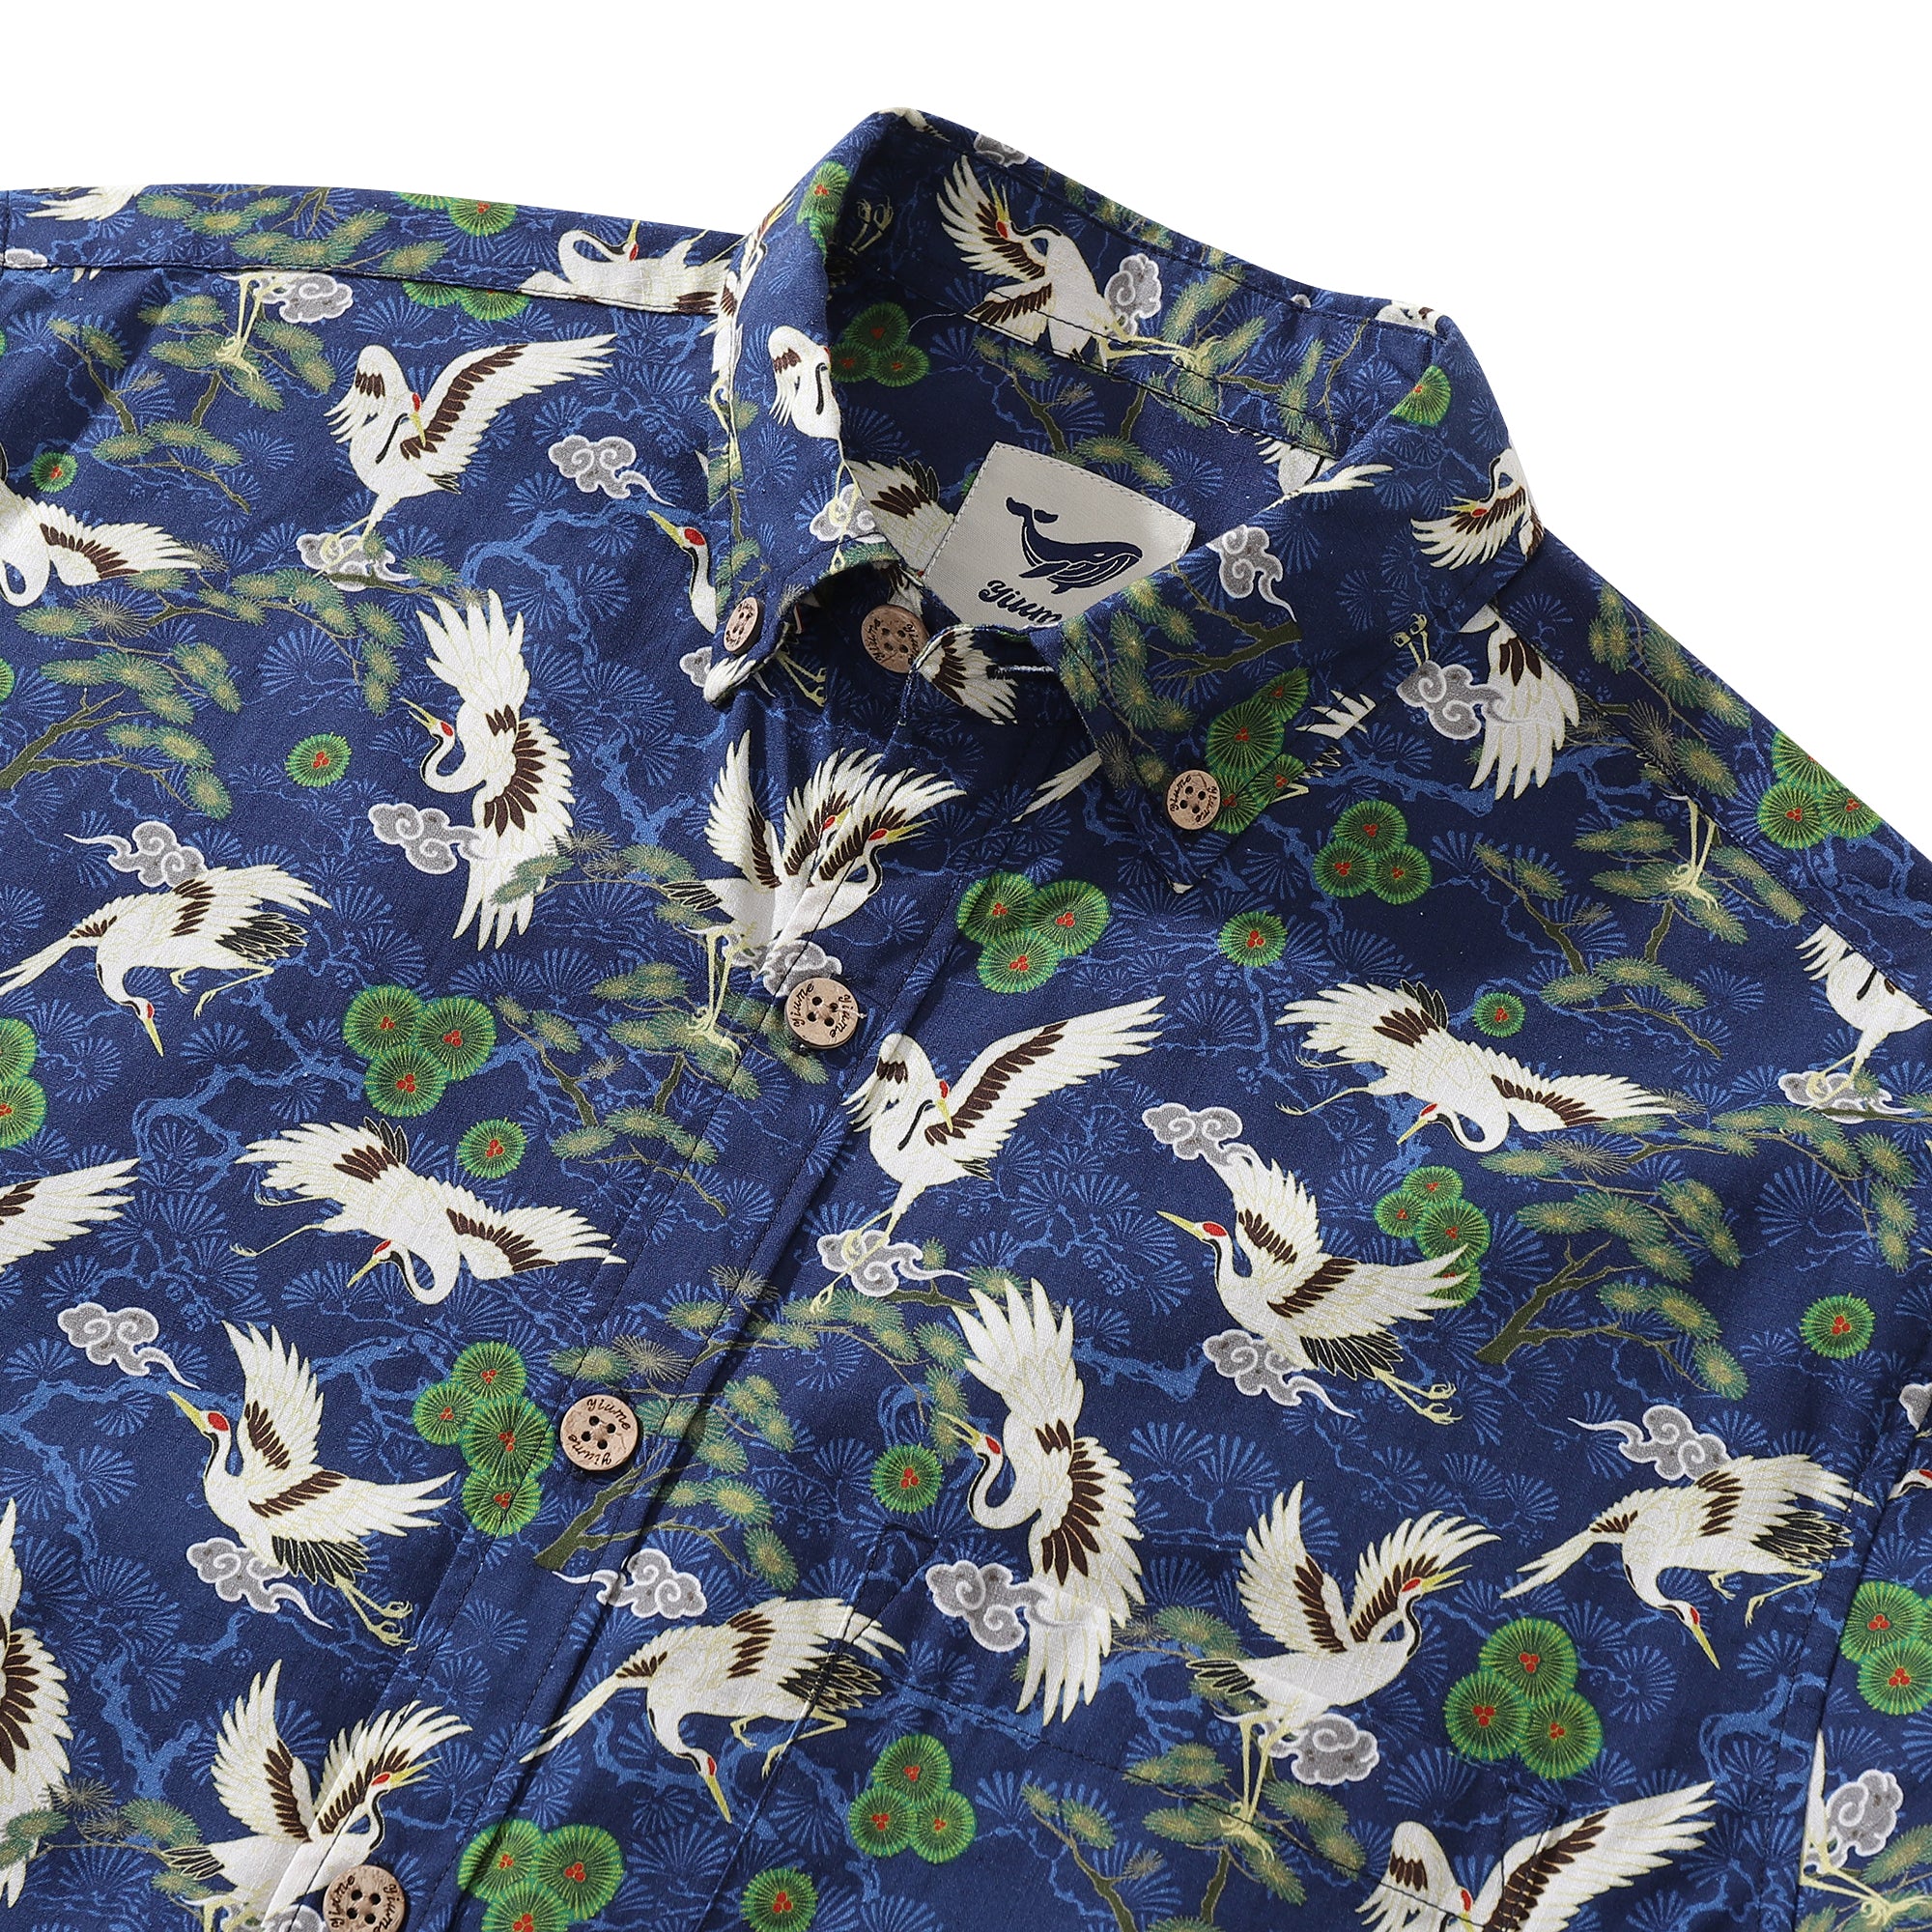 Men's Hawaiian Shirt Cranes Dancing in the Sky Cotton Button-down Long Sleeve Aloha Shirt